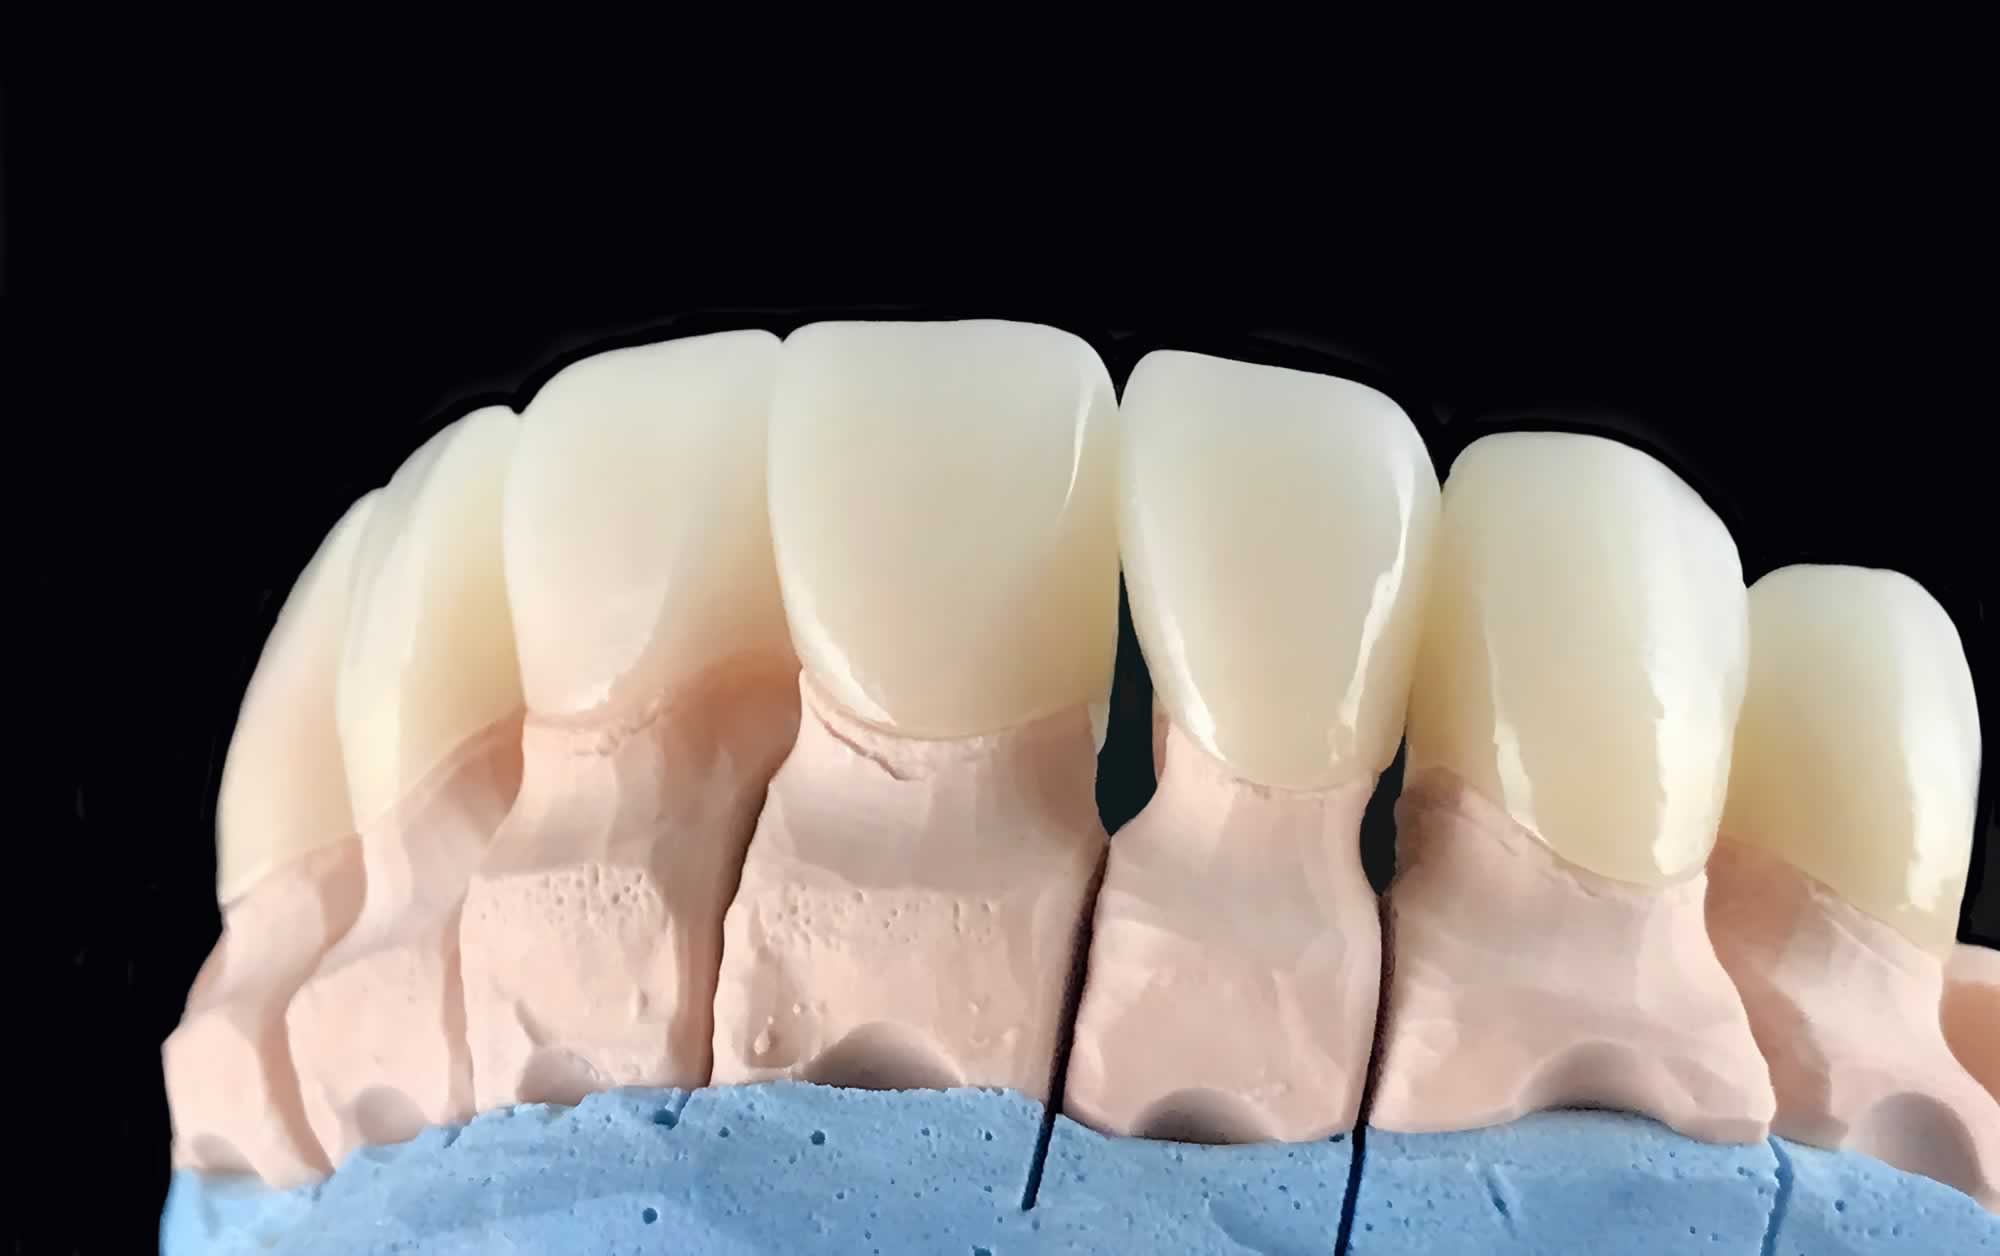 Broken Dental Crowns